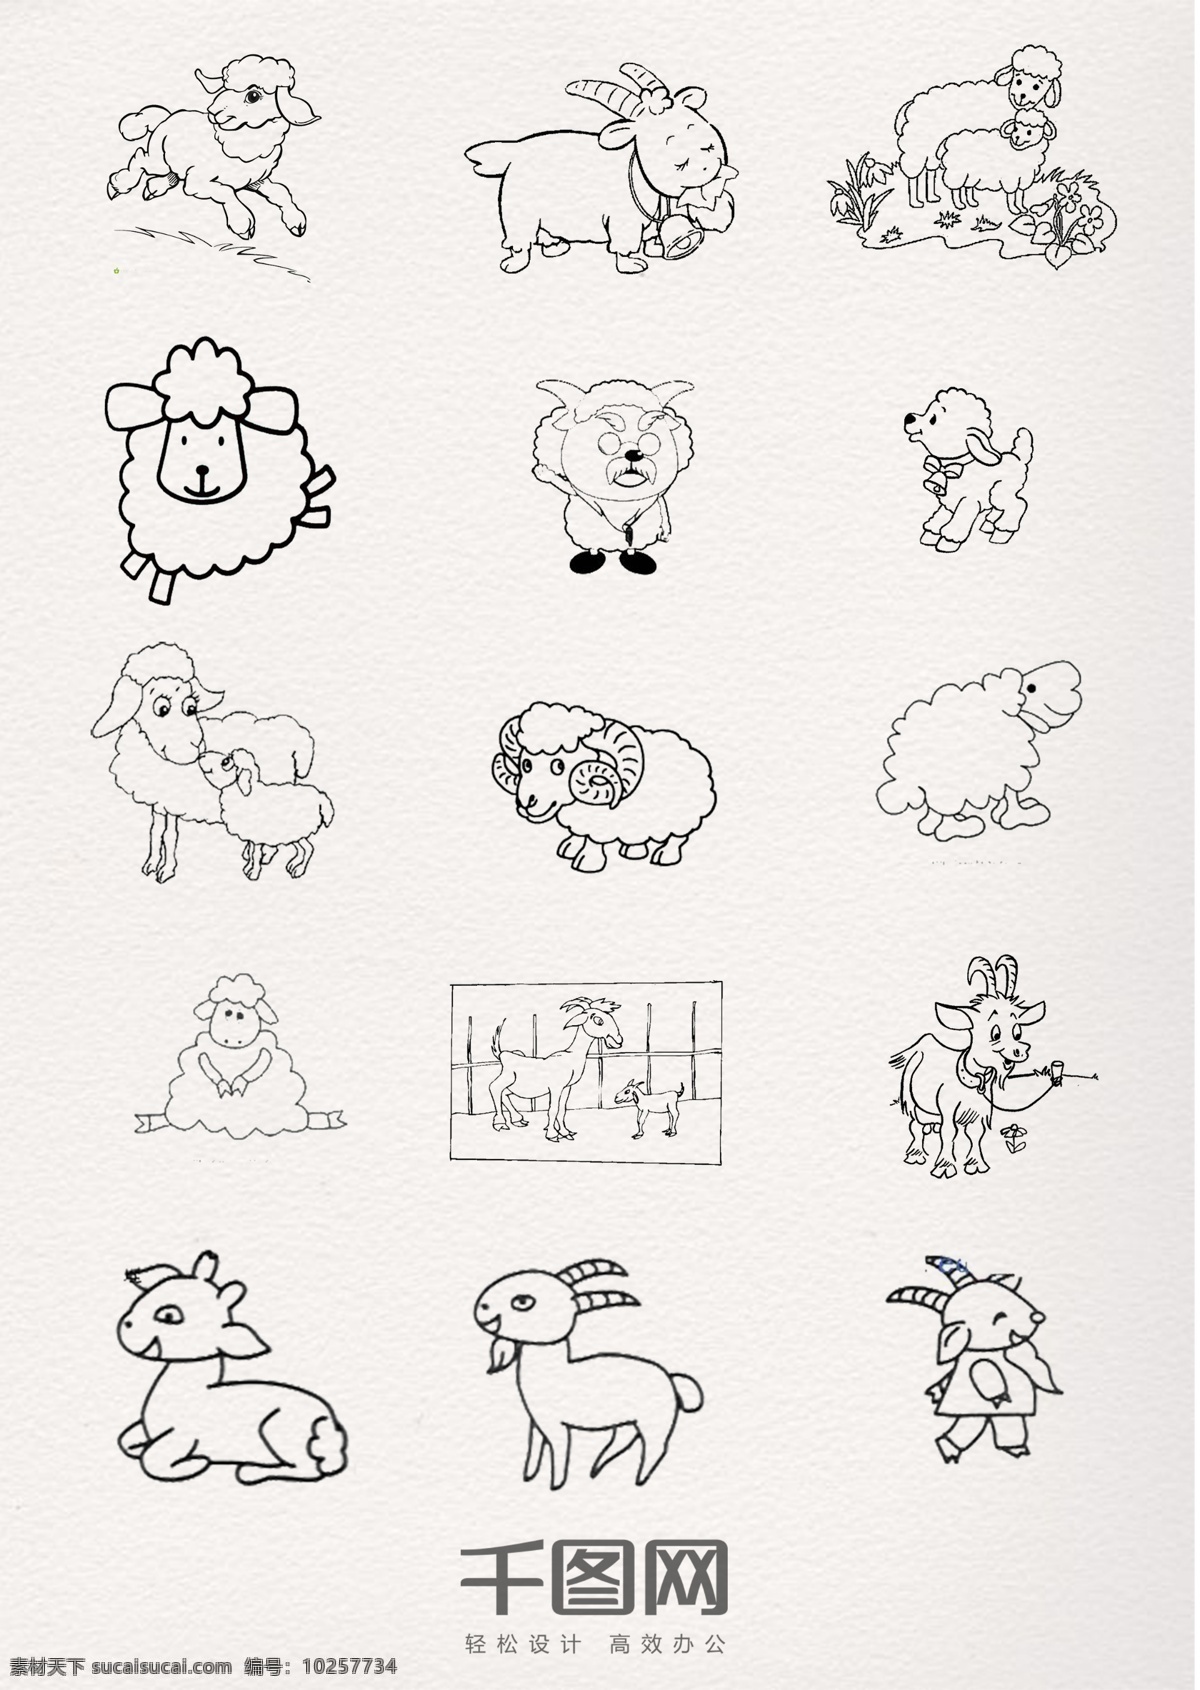 黑色 线条 绵羊 动物 简 笔画 卡通 铅笔 钢笔 黑白 简约画